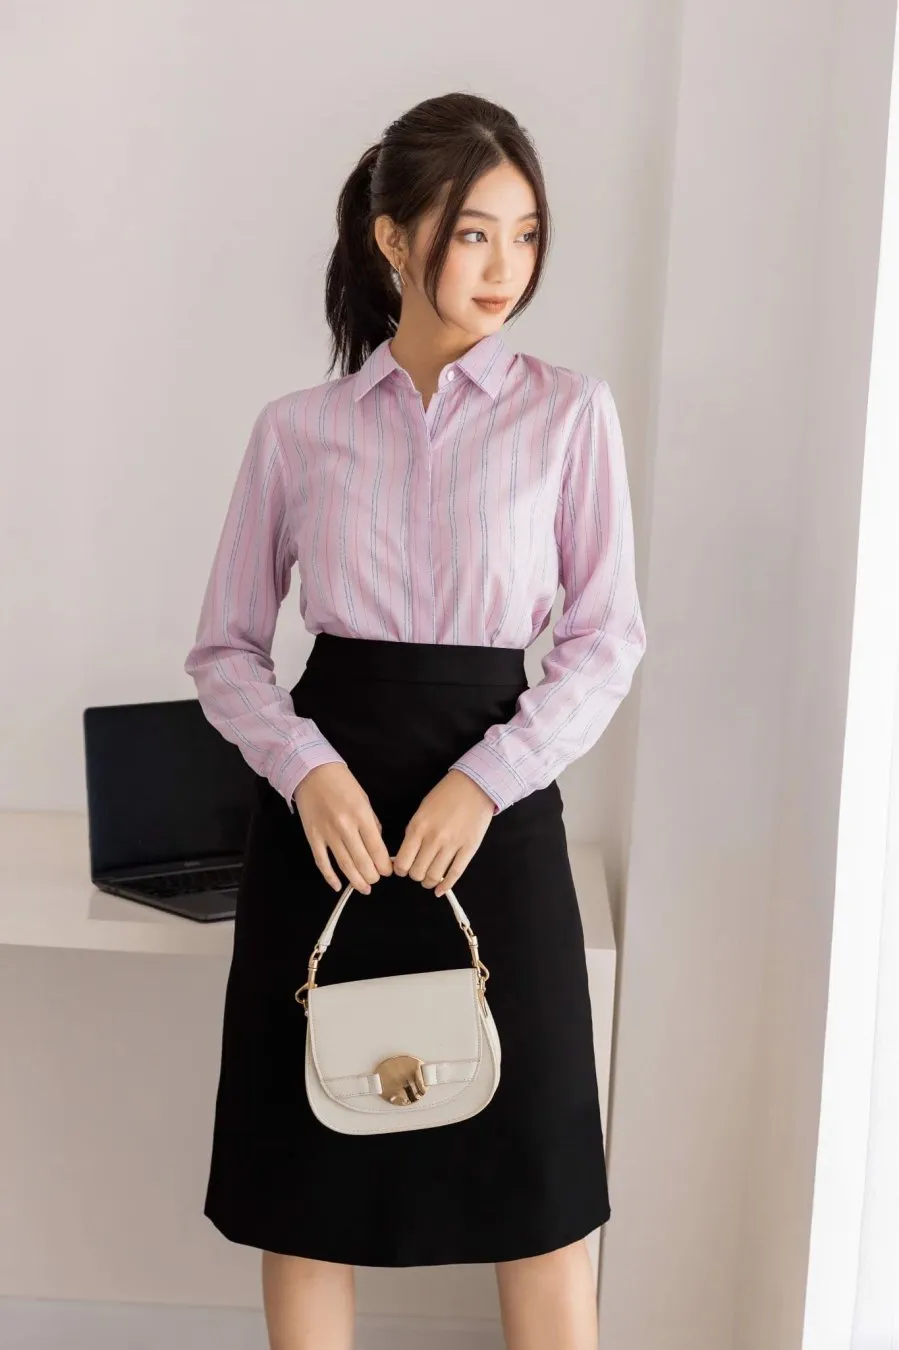 Phối chân váy chữ A bút chì cùng áo sơ mi, áo blouse với áo blazer là cách diện cơ bản dành cho các cô nàng công sở. 